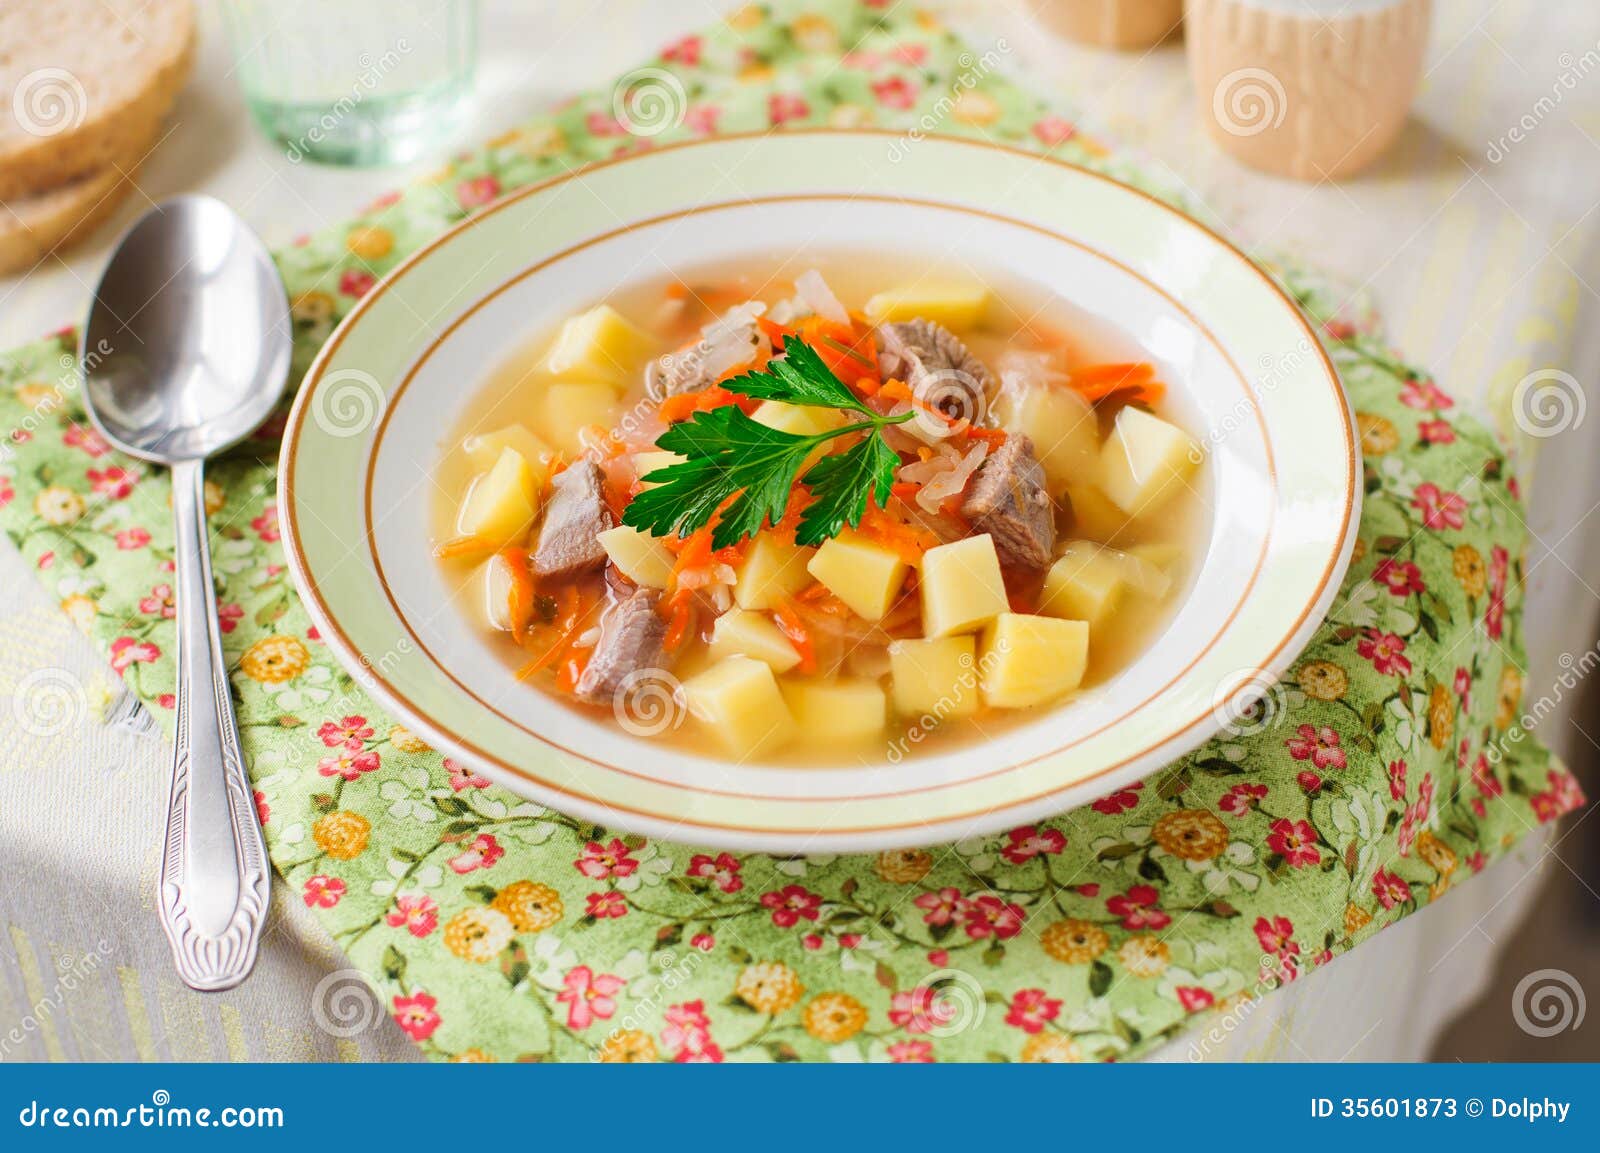 Russische Sauerkraut-Suppe, Shchi (Stchi) Stockbild - Bild von deutsch ...